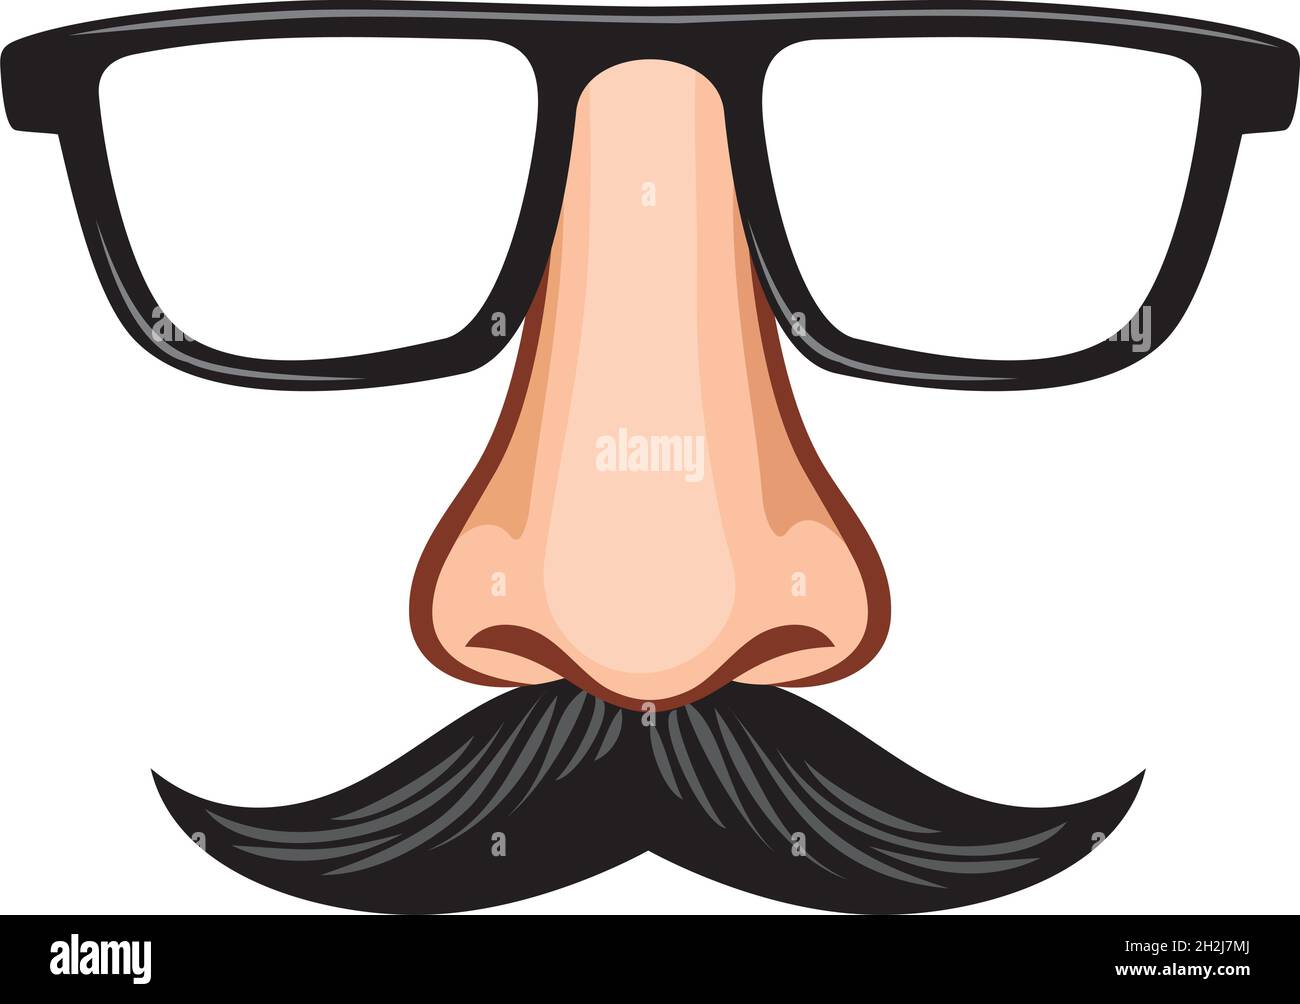 Lunettes et nez avec moustache fausse illustration du vecteur de masque  Image Vectorielle Stock - Alamy